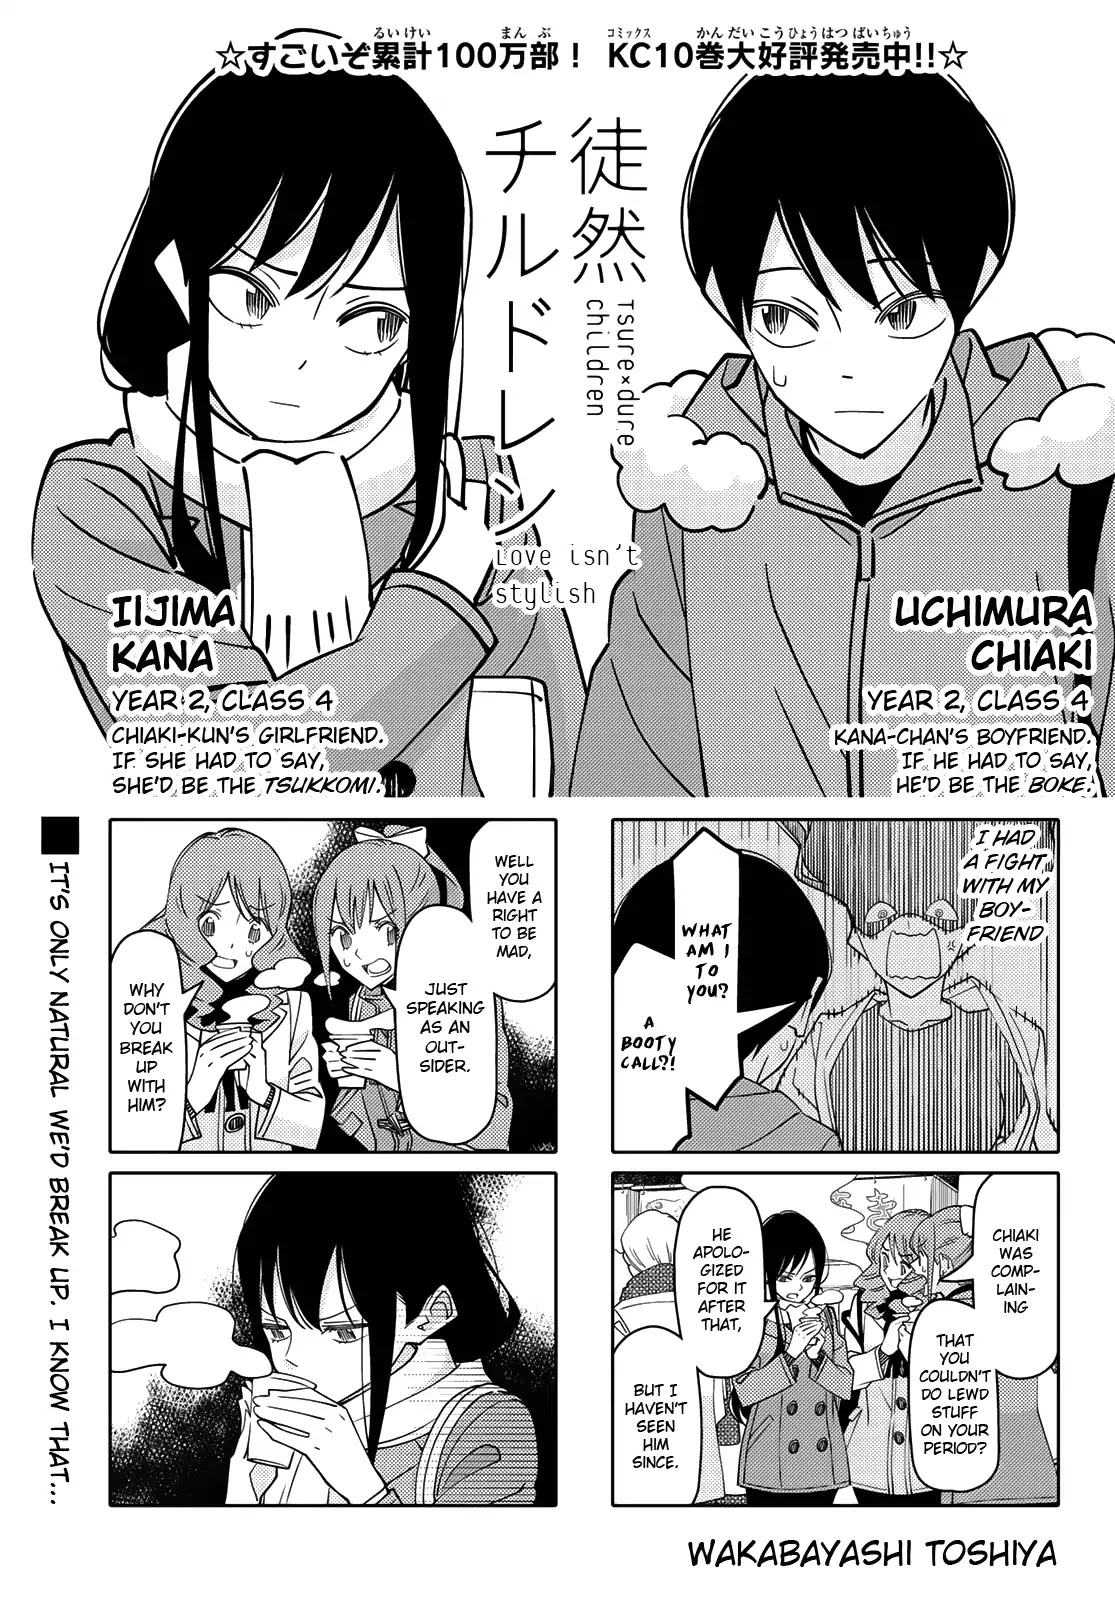 Tsurezure Children Chapter 190: Love Isn T Stylist (Uchimura/iijima) - Picture 1